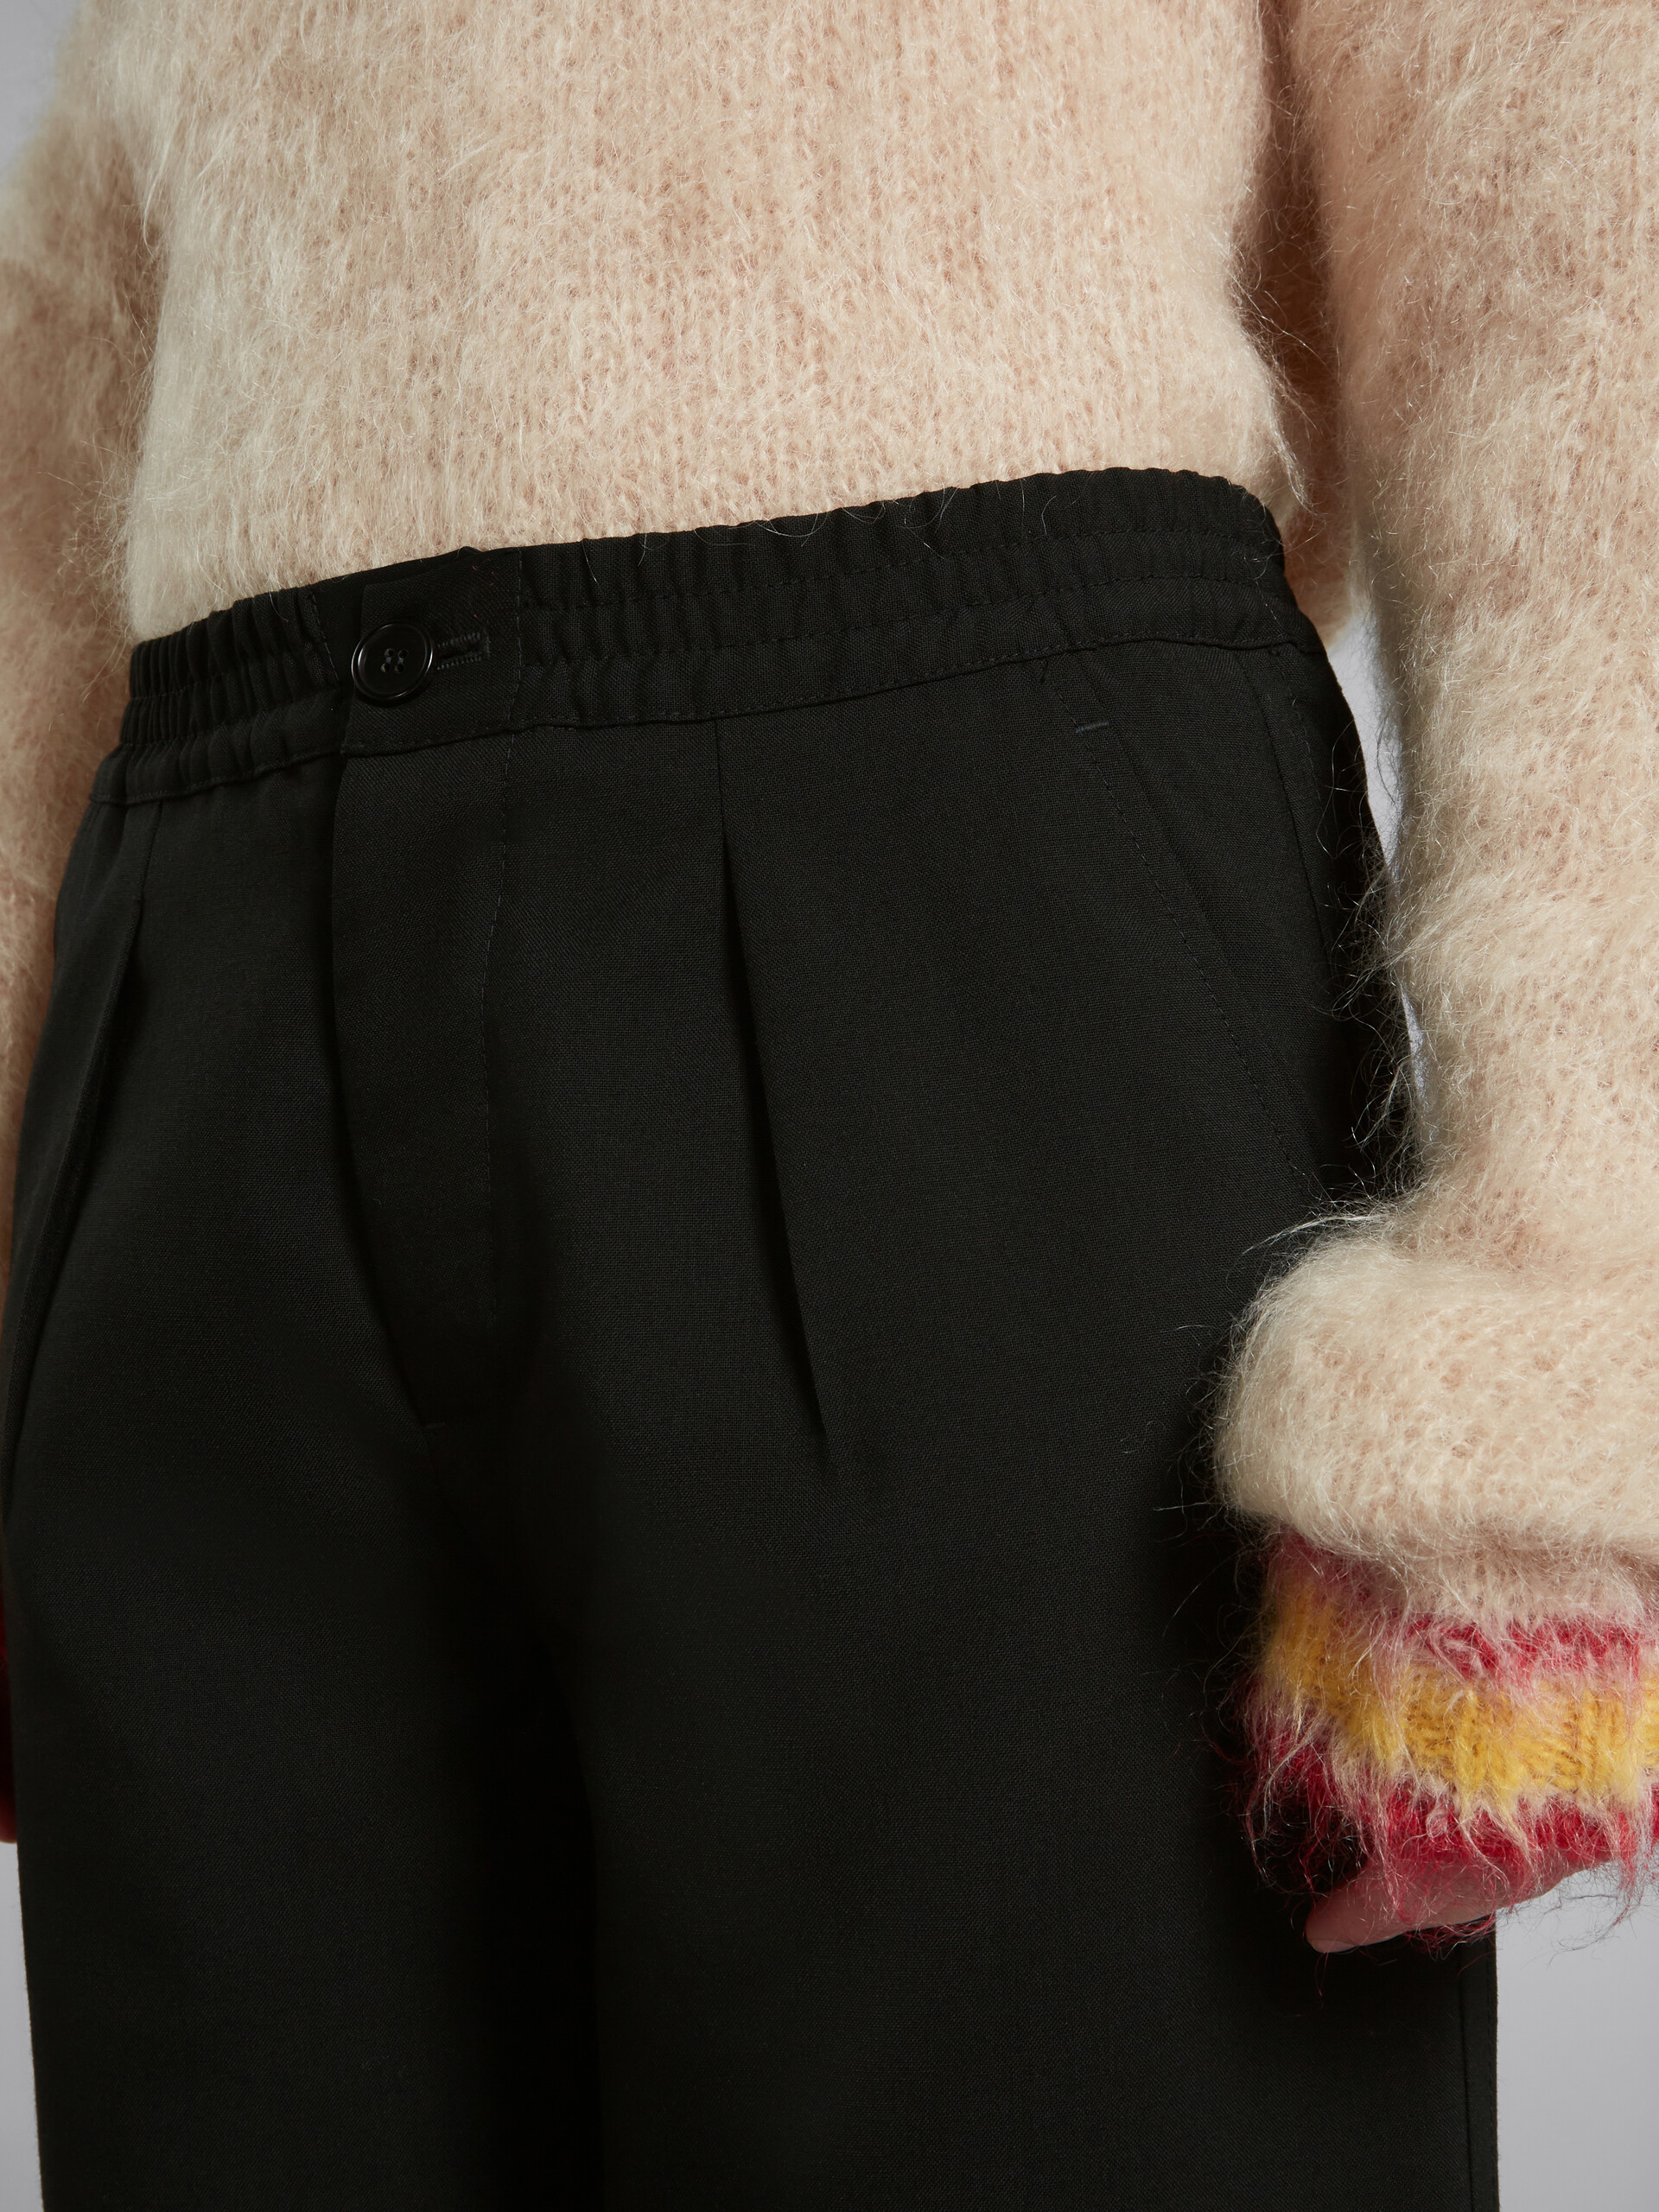 Pantalones negros de lana con pliegues delanteros - Pantalones - Image 4